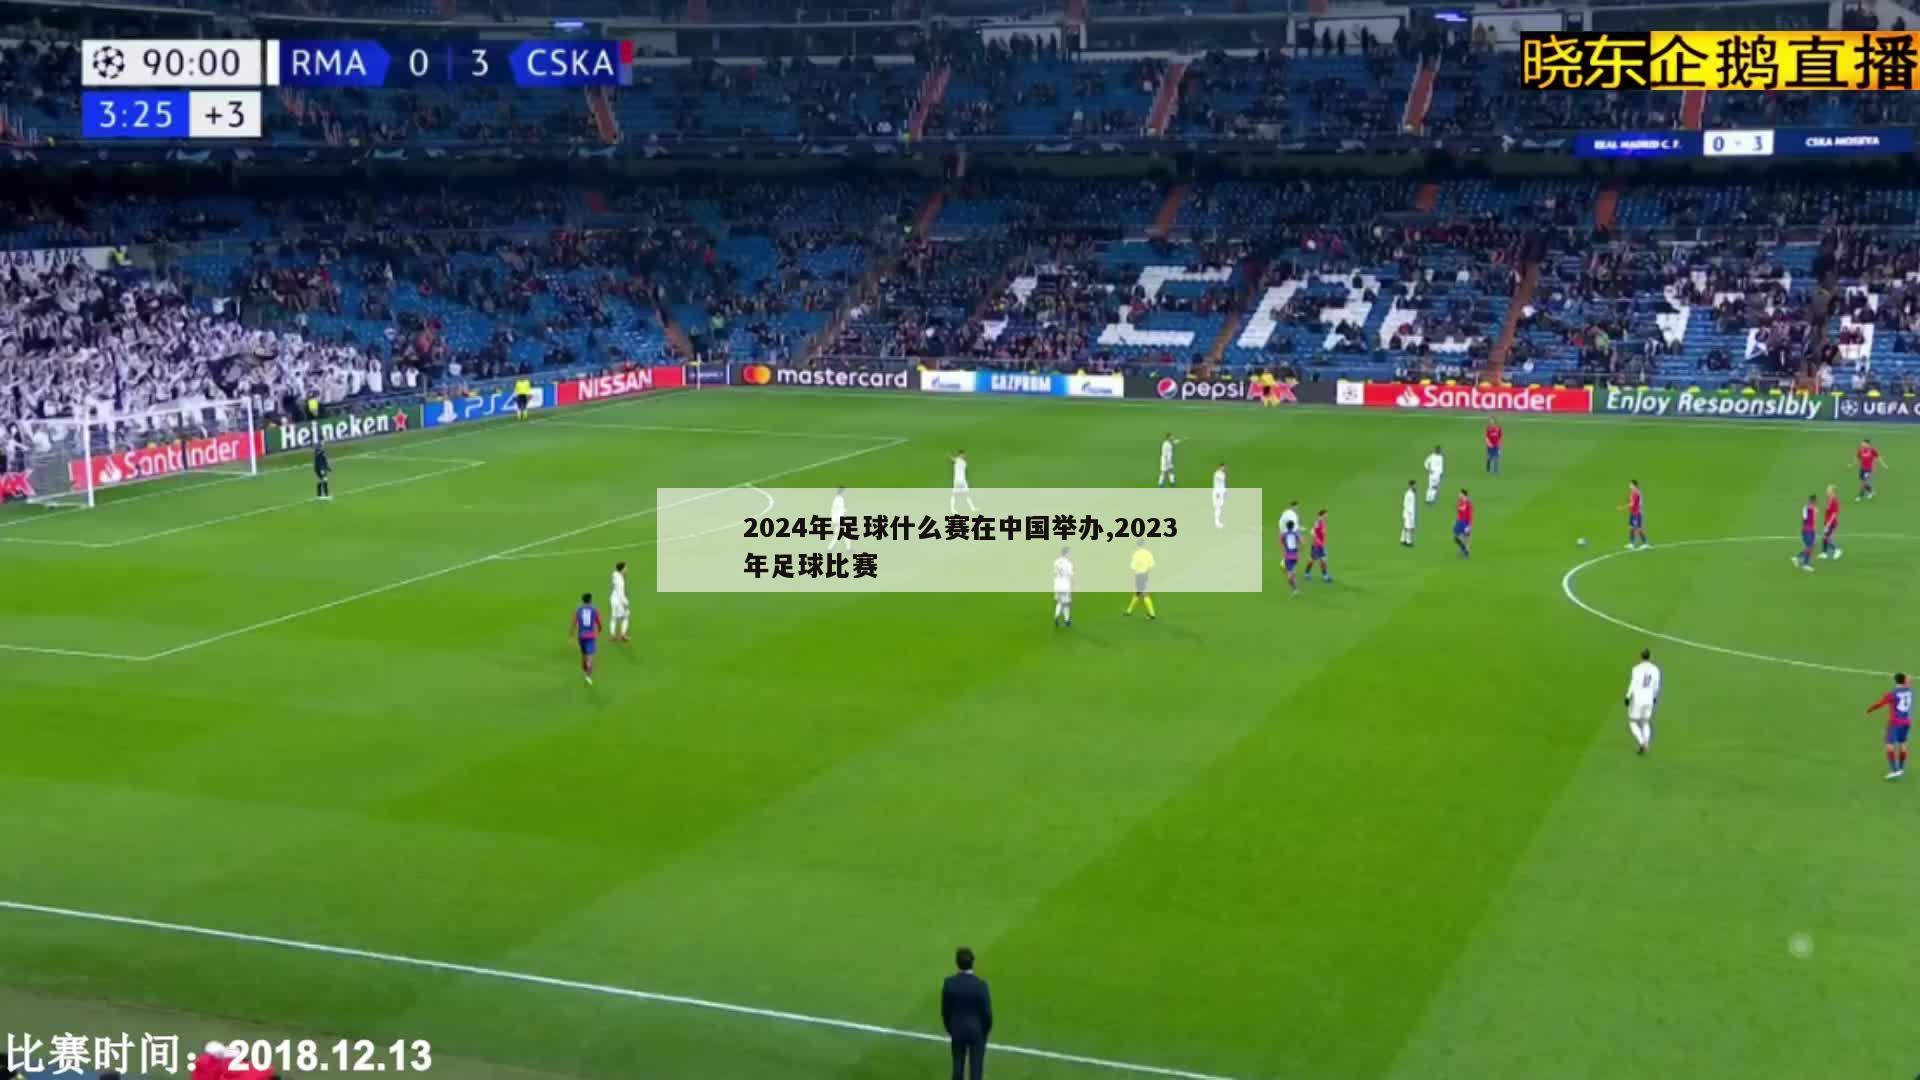 2024年足球什么赛在中国举办,2023年足球比赛